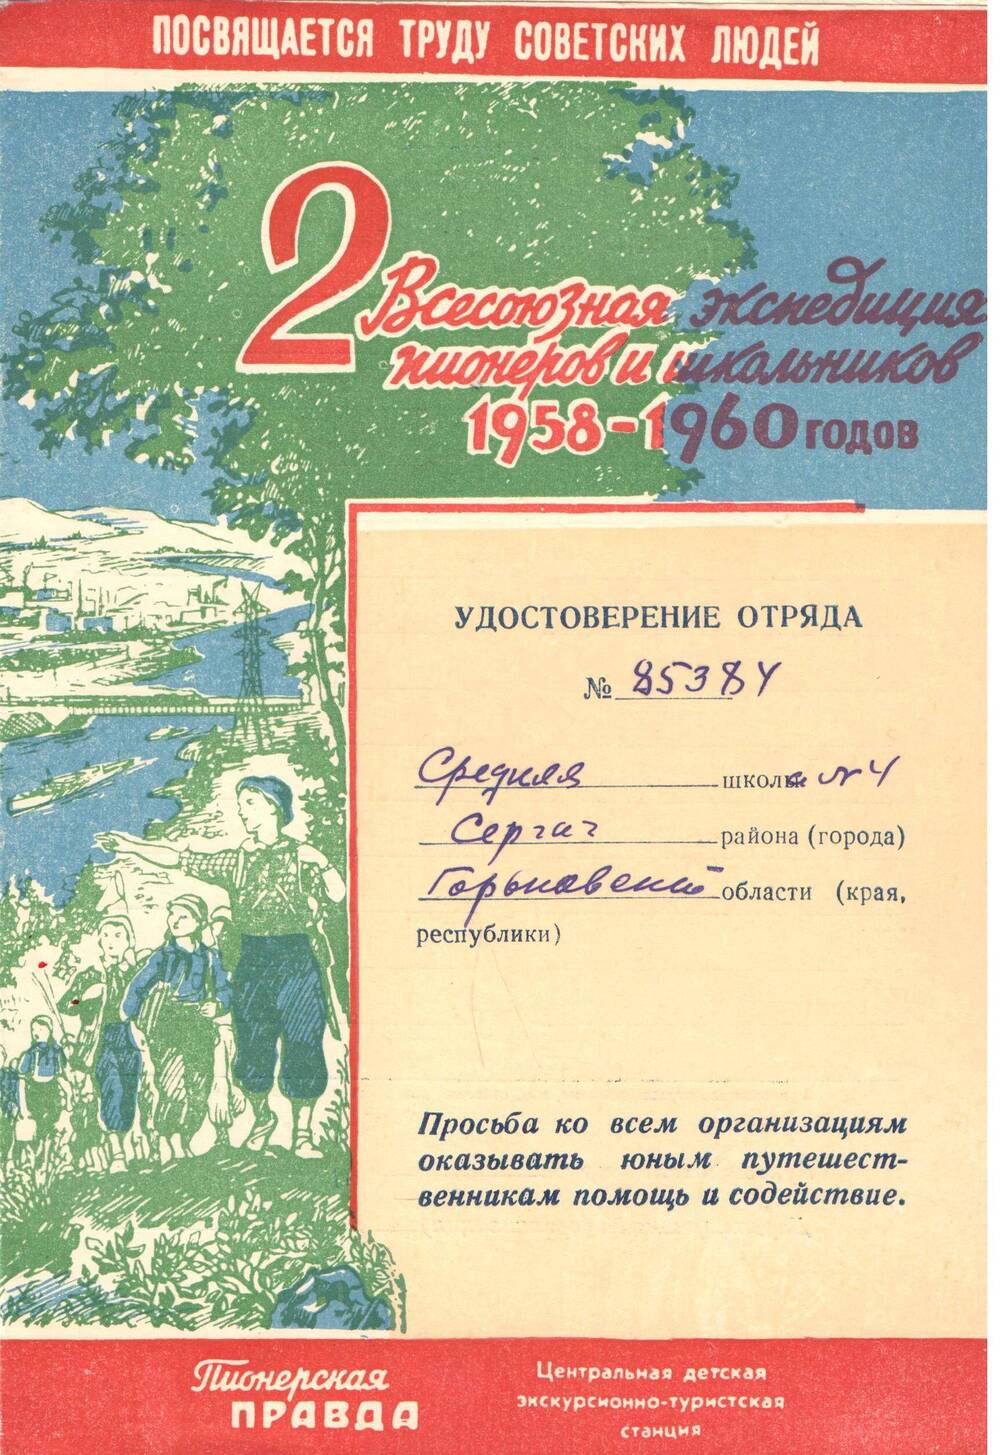 Удостоверение отряда средней школы № 4 станции Сергач № 85384 1958-1960 гг